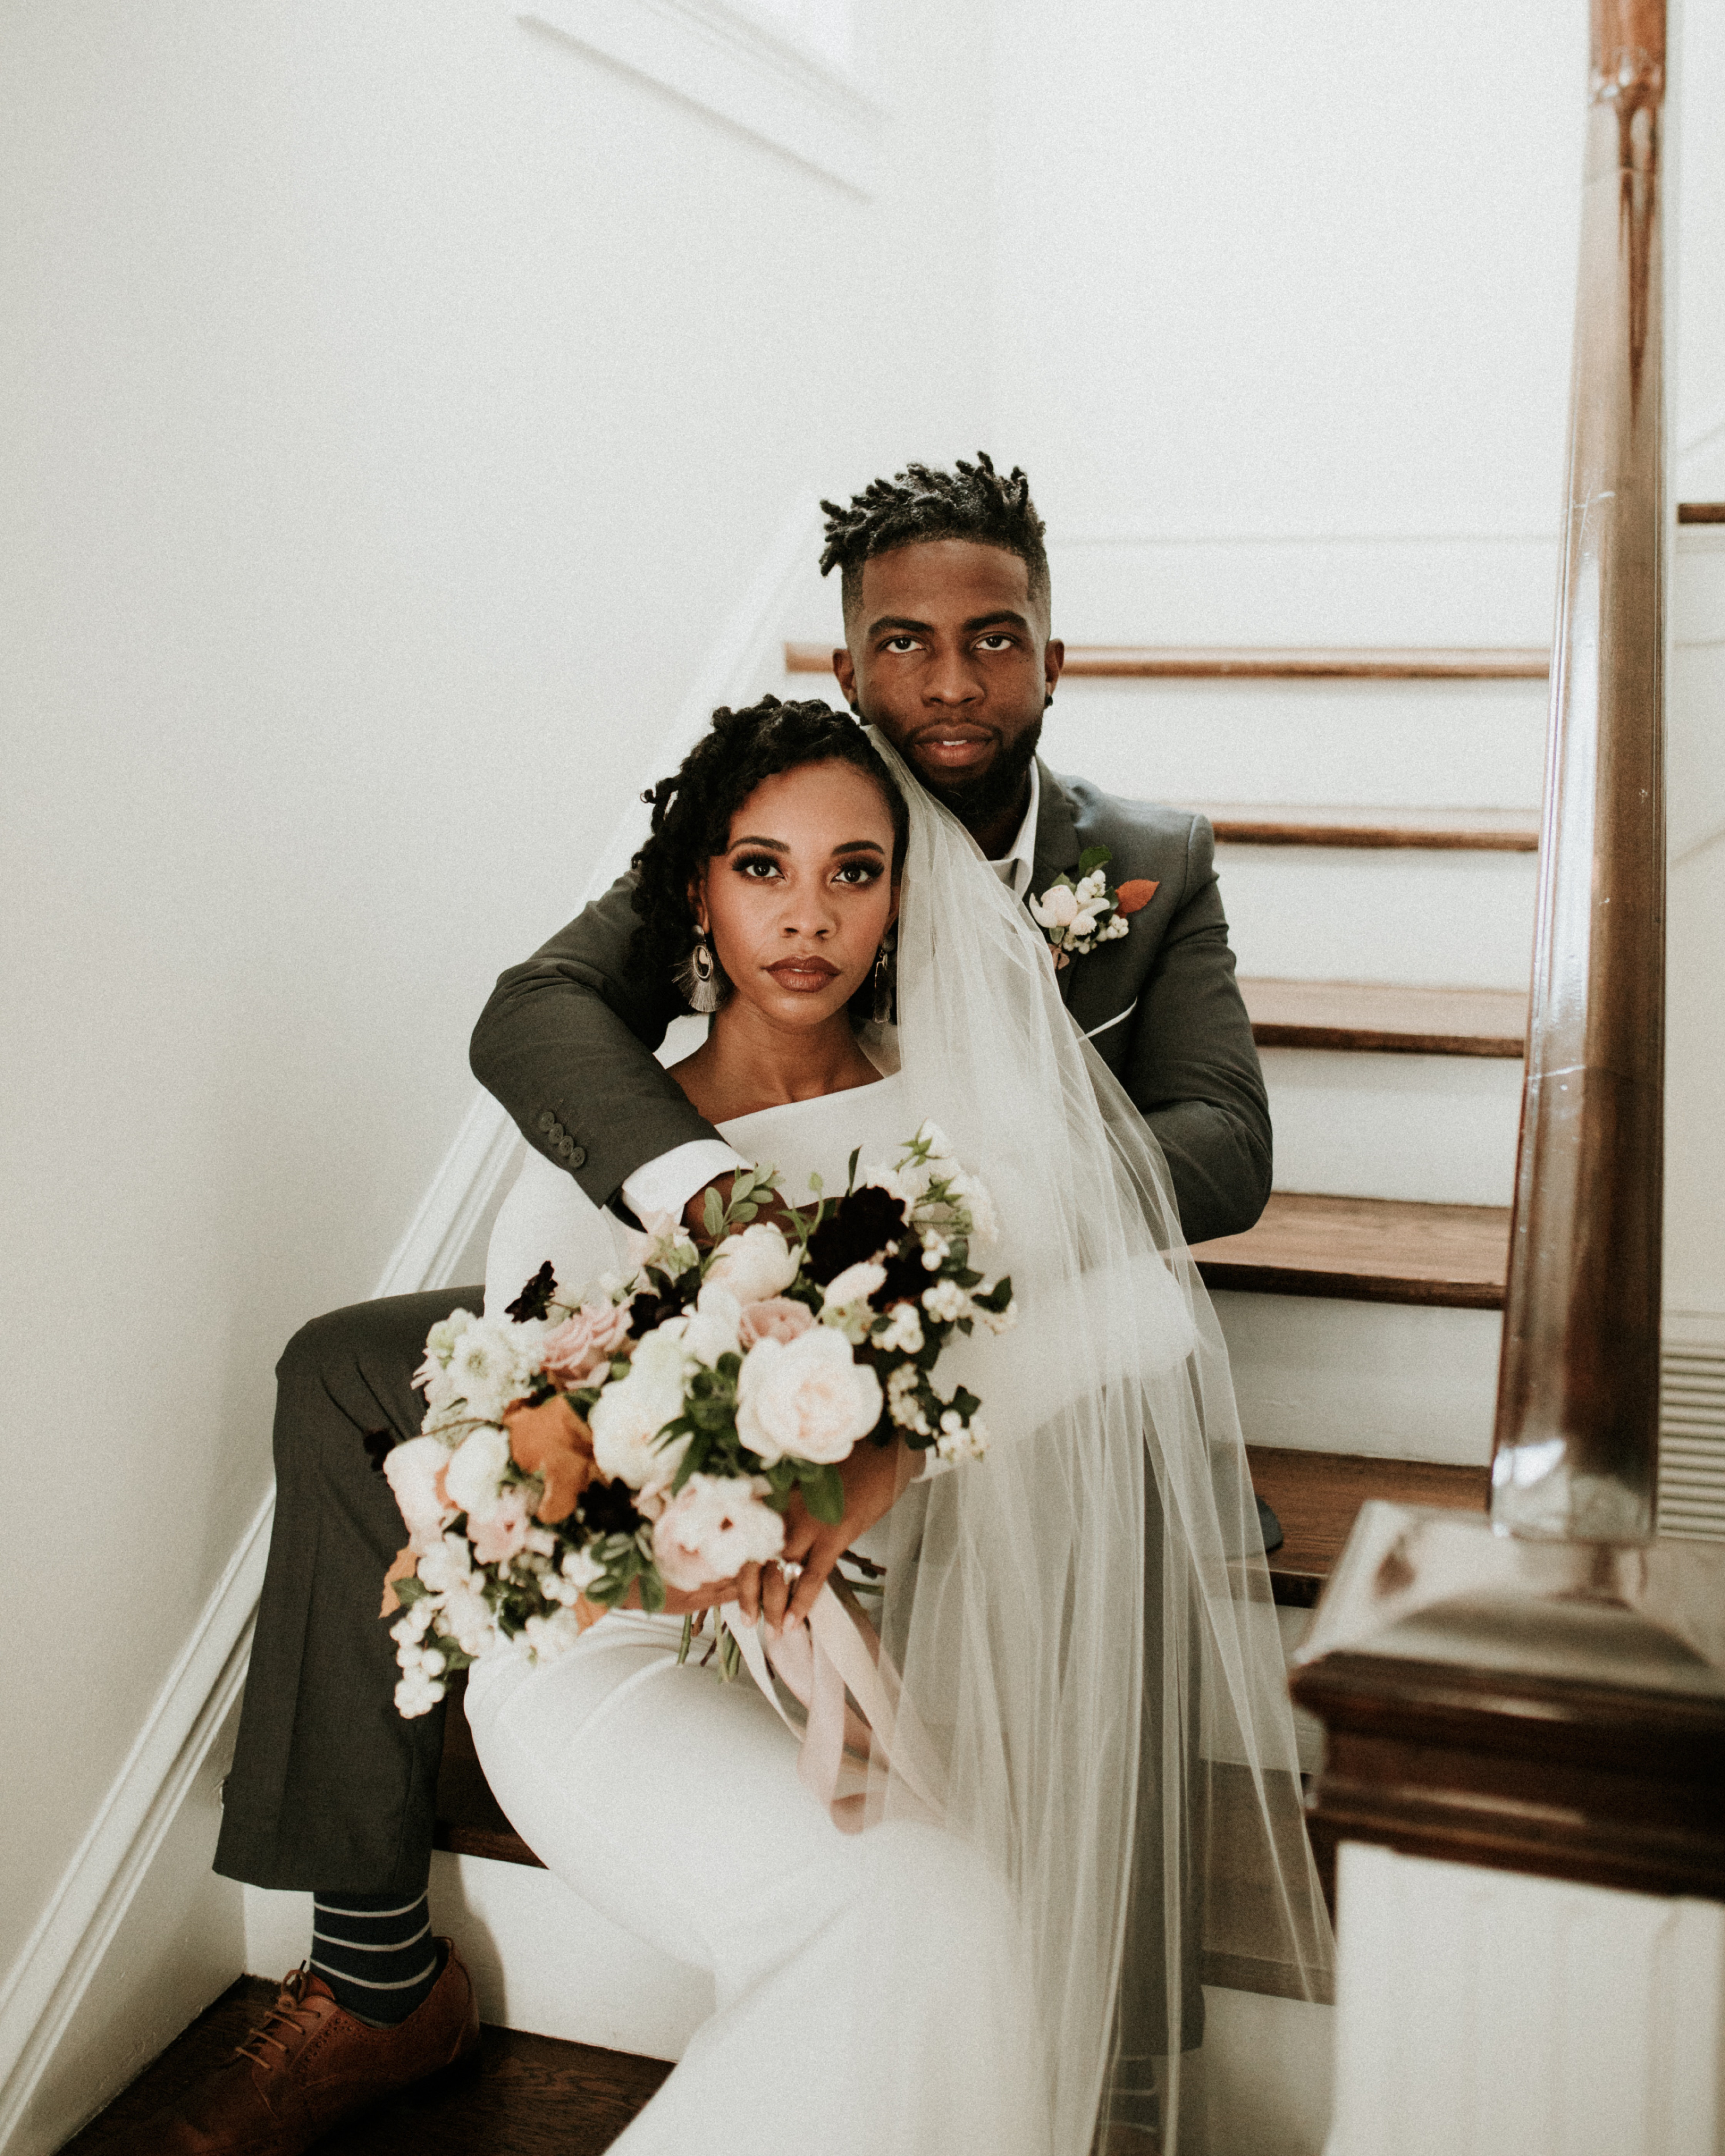 tenue et bouquet des mariés minimalistes et élégants